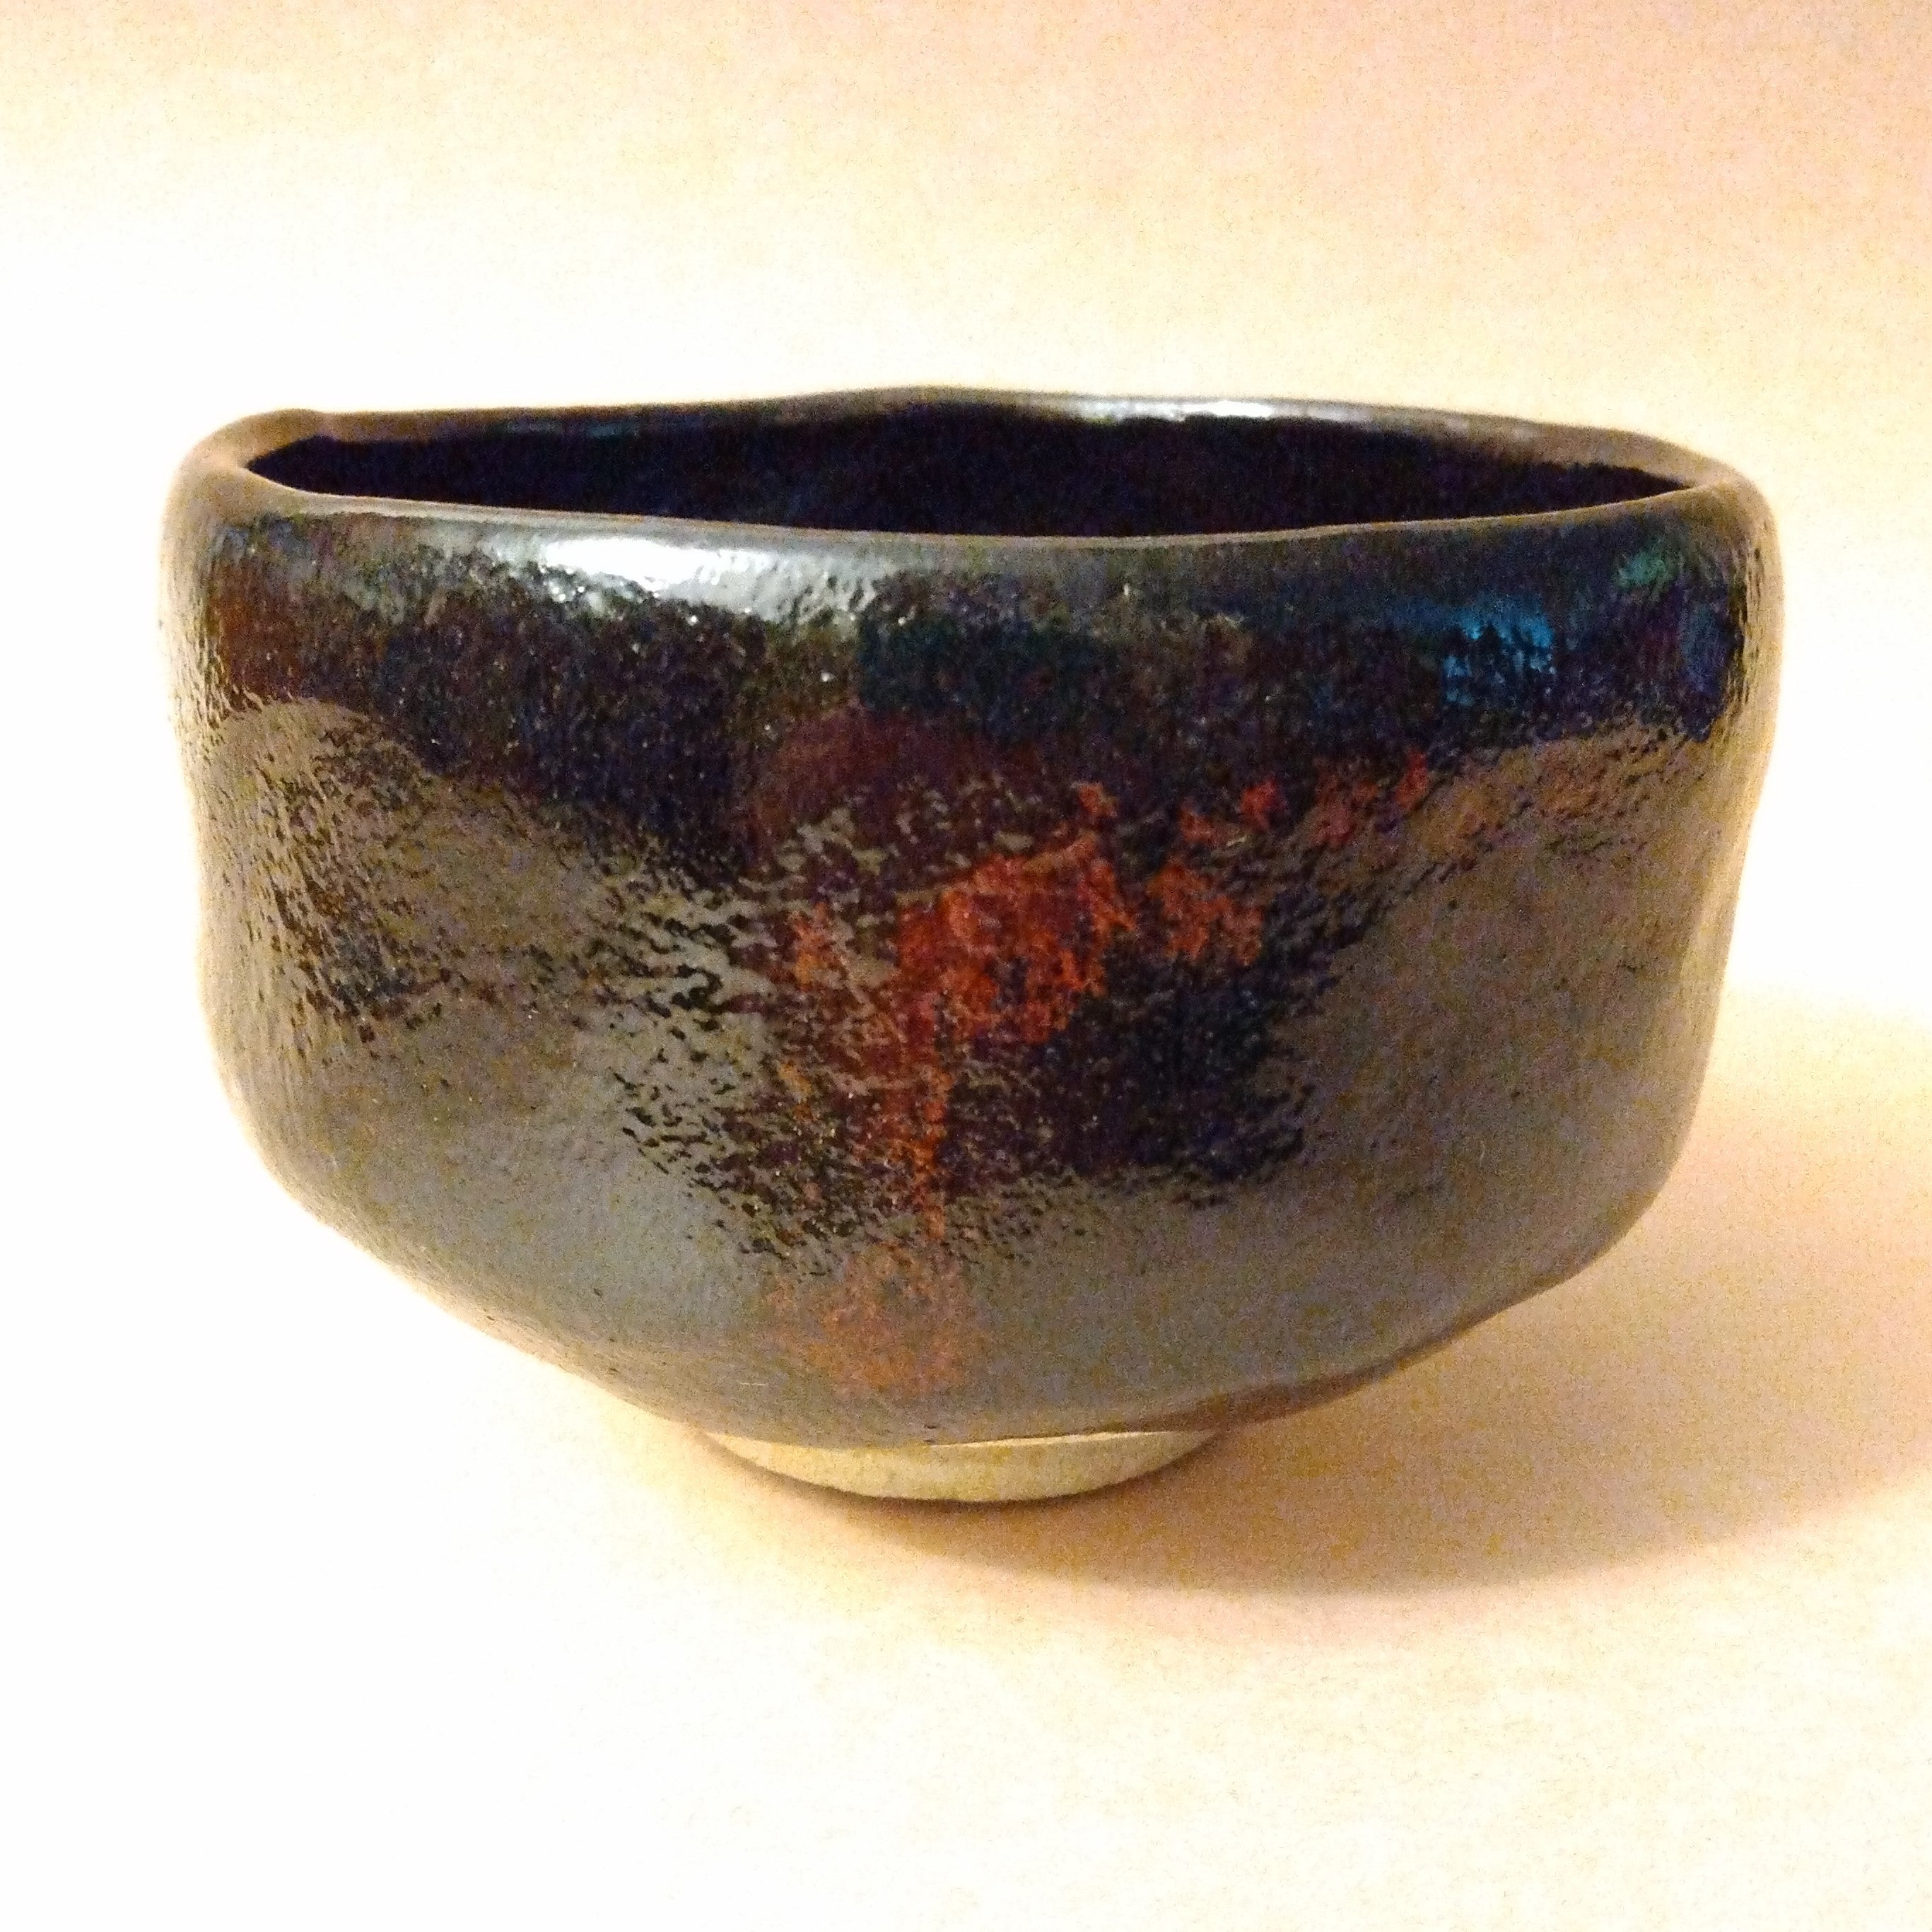 Kuroraku (black raku) Matcha Chawan (Tea Bowl) by Yoshimura Rakunyu II; Thiel Collection